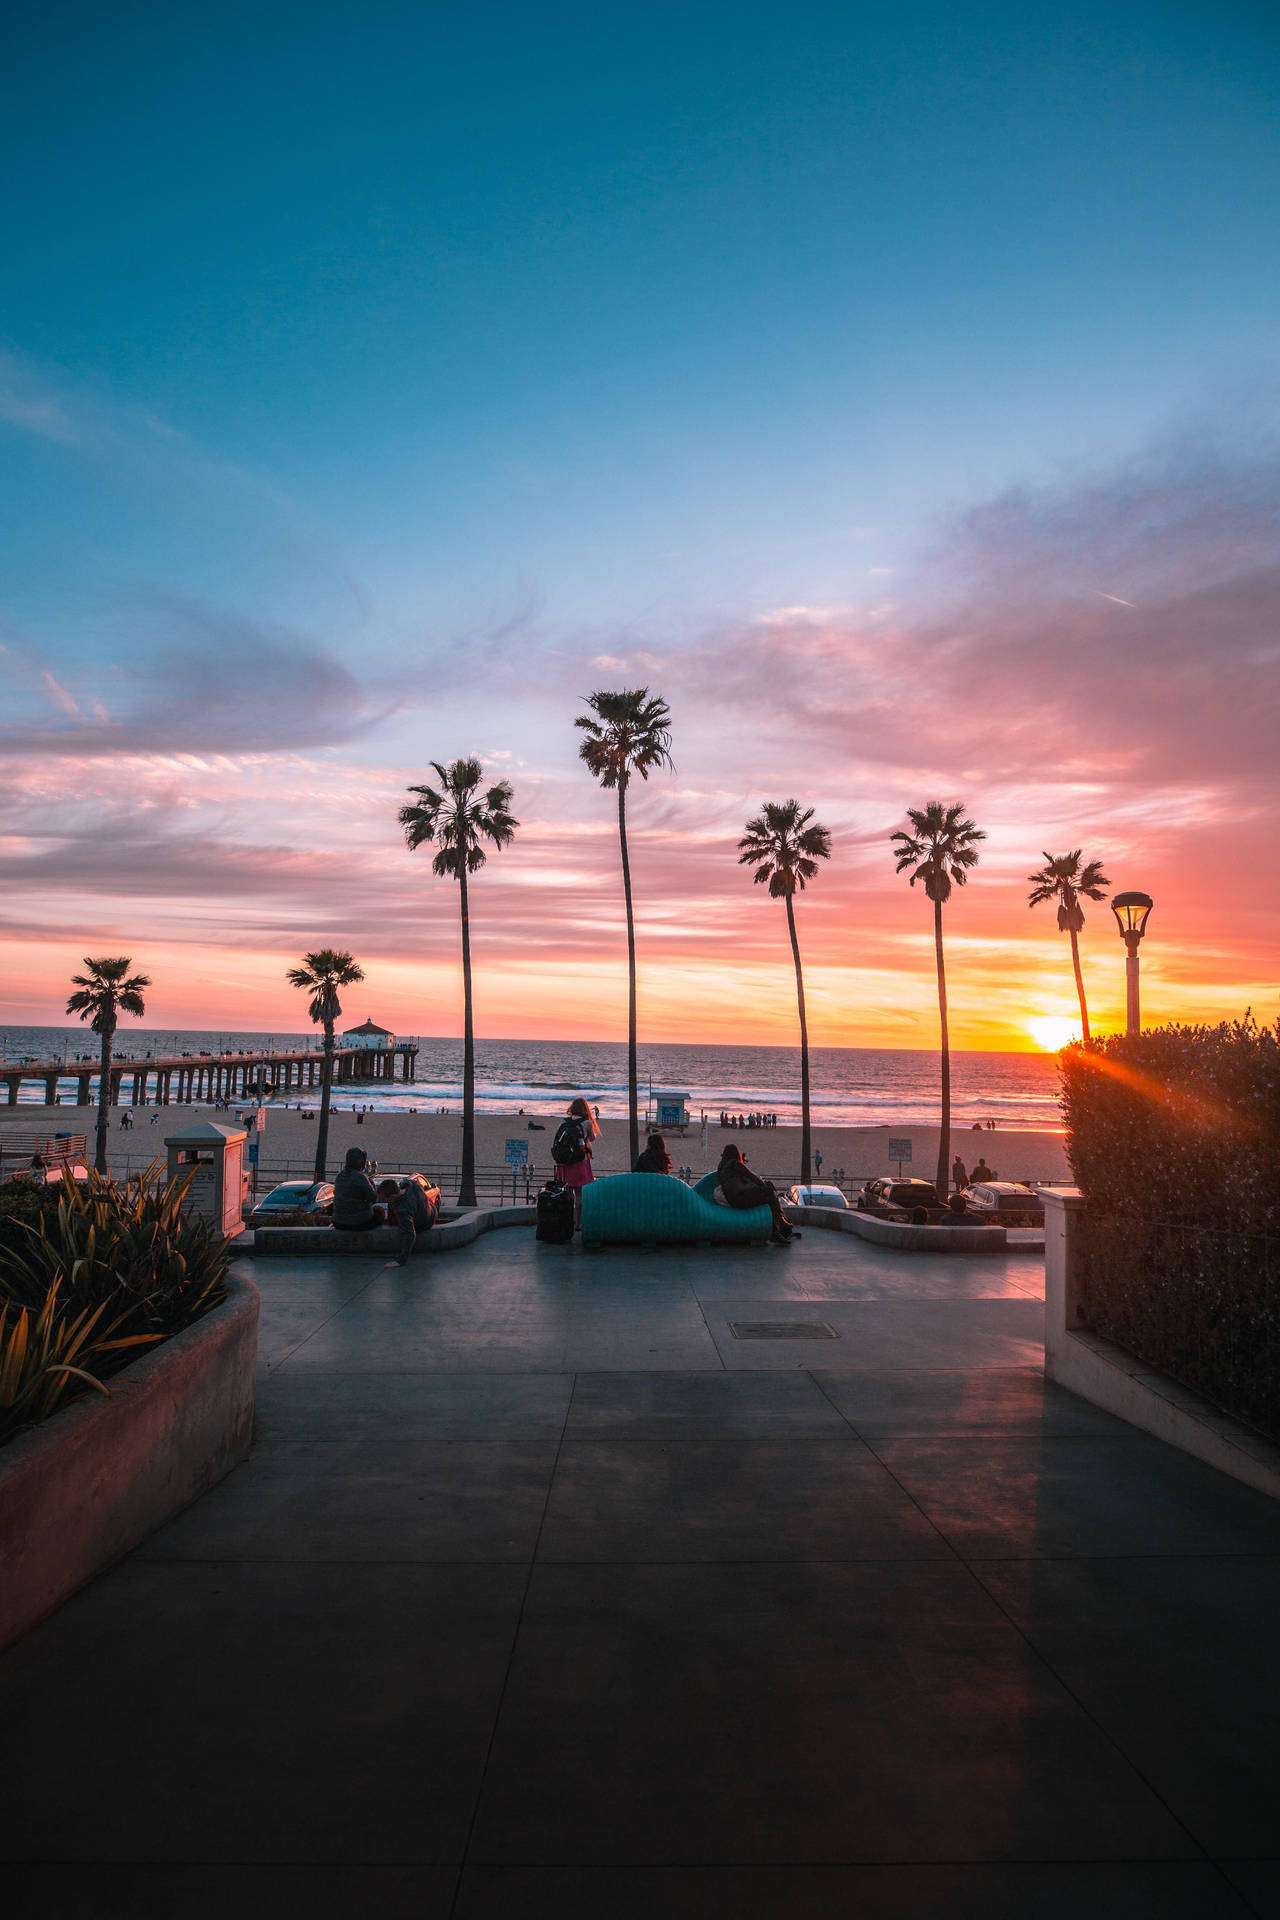 The Best Hd Phone Beach Side Sunset Wallpaper